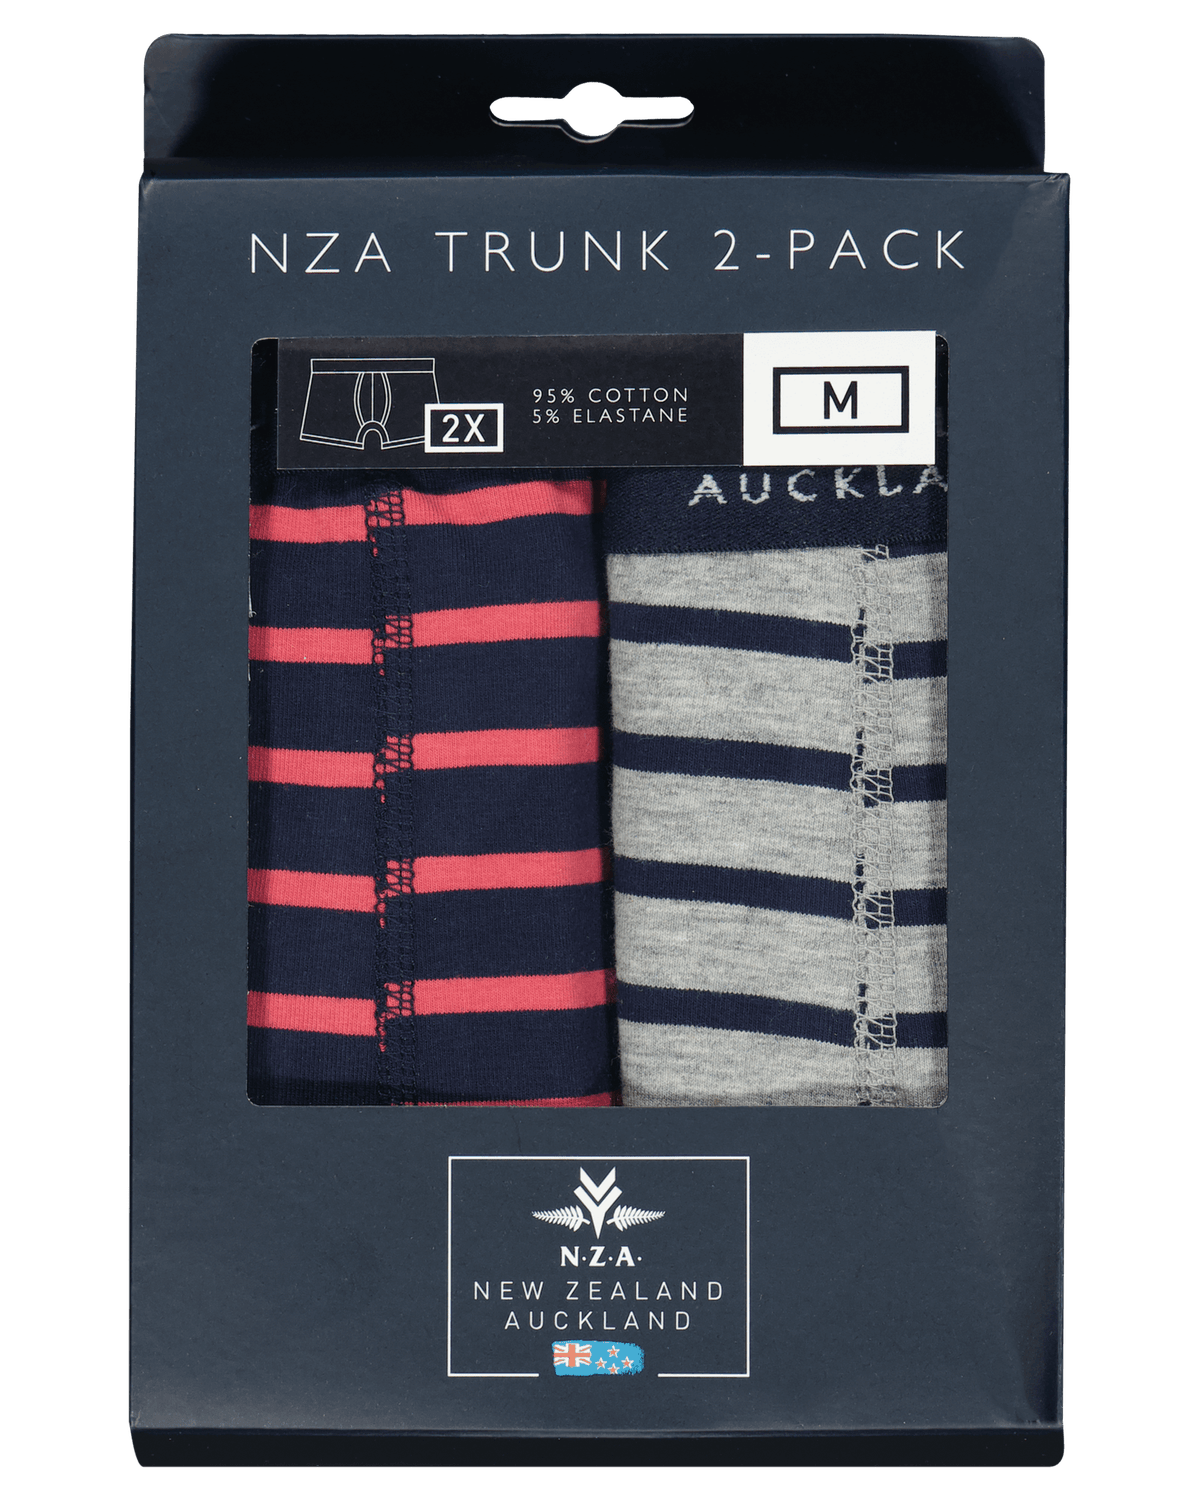 2 pack sokken – Mixed color